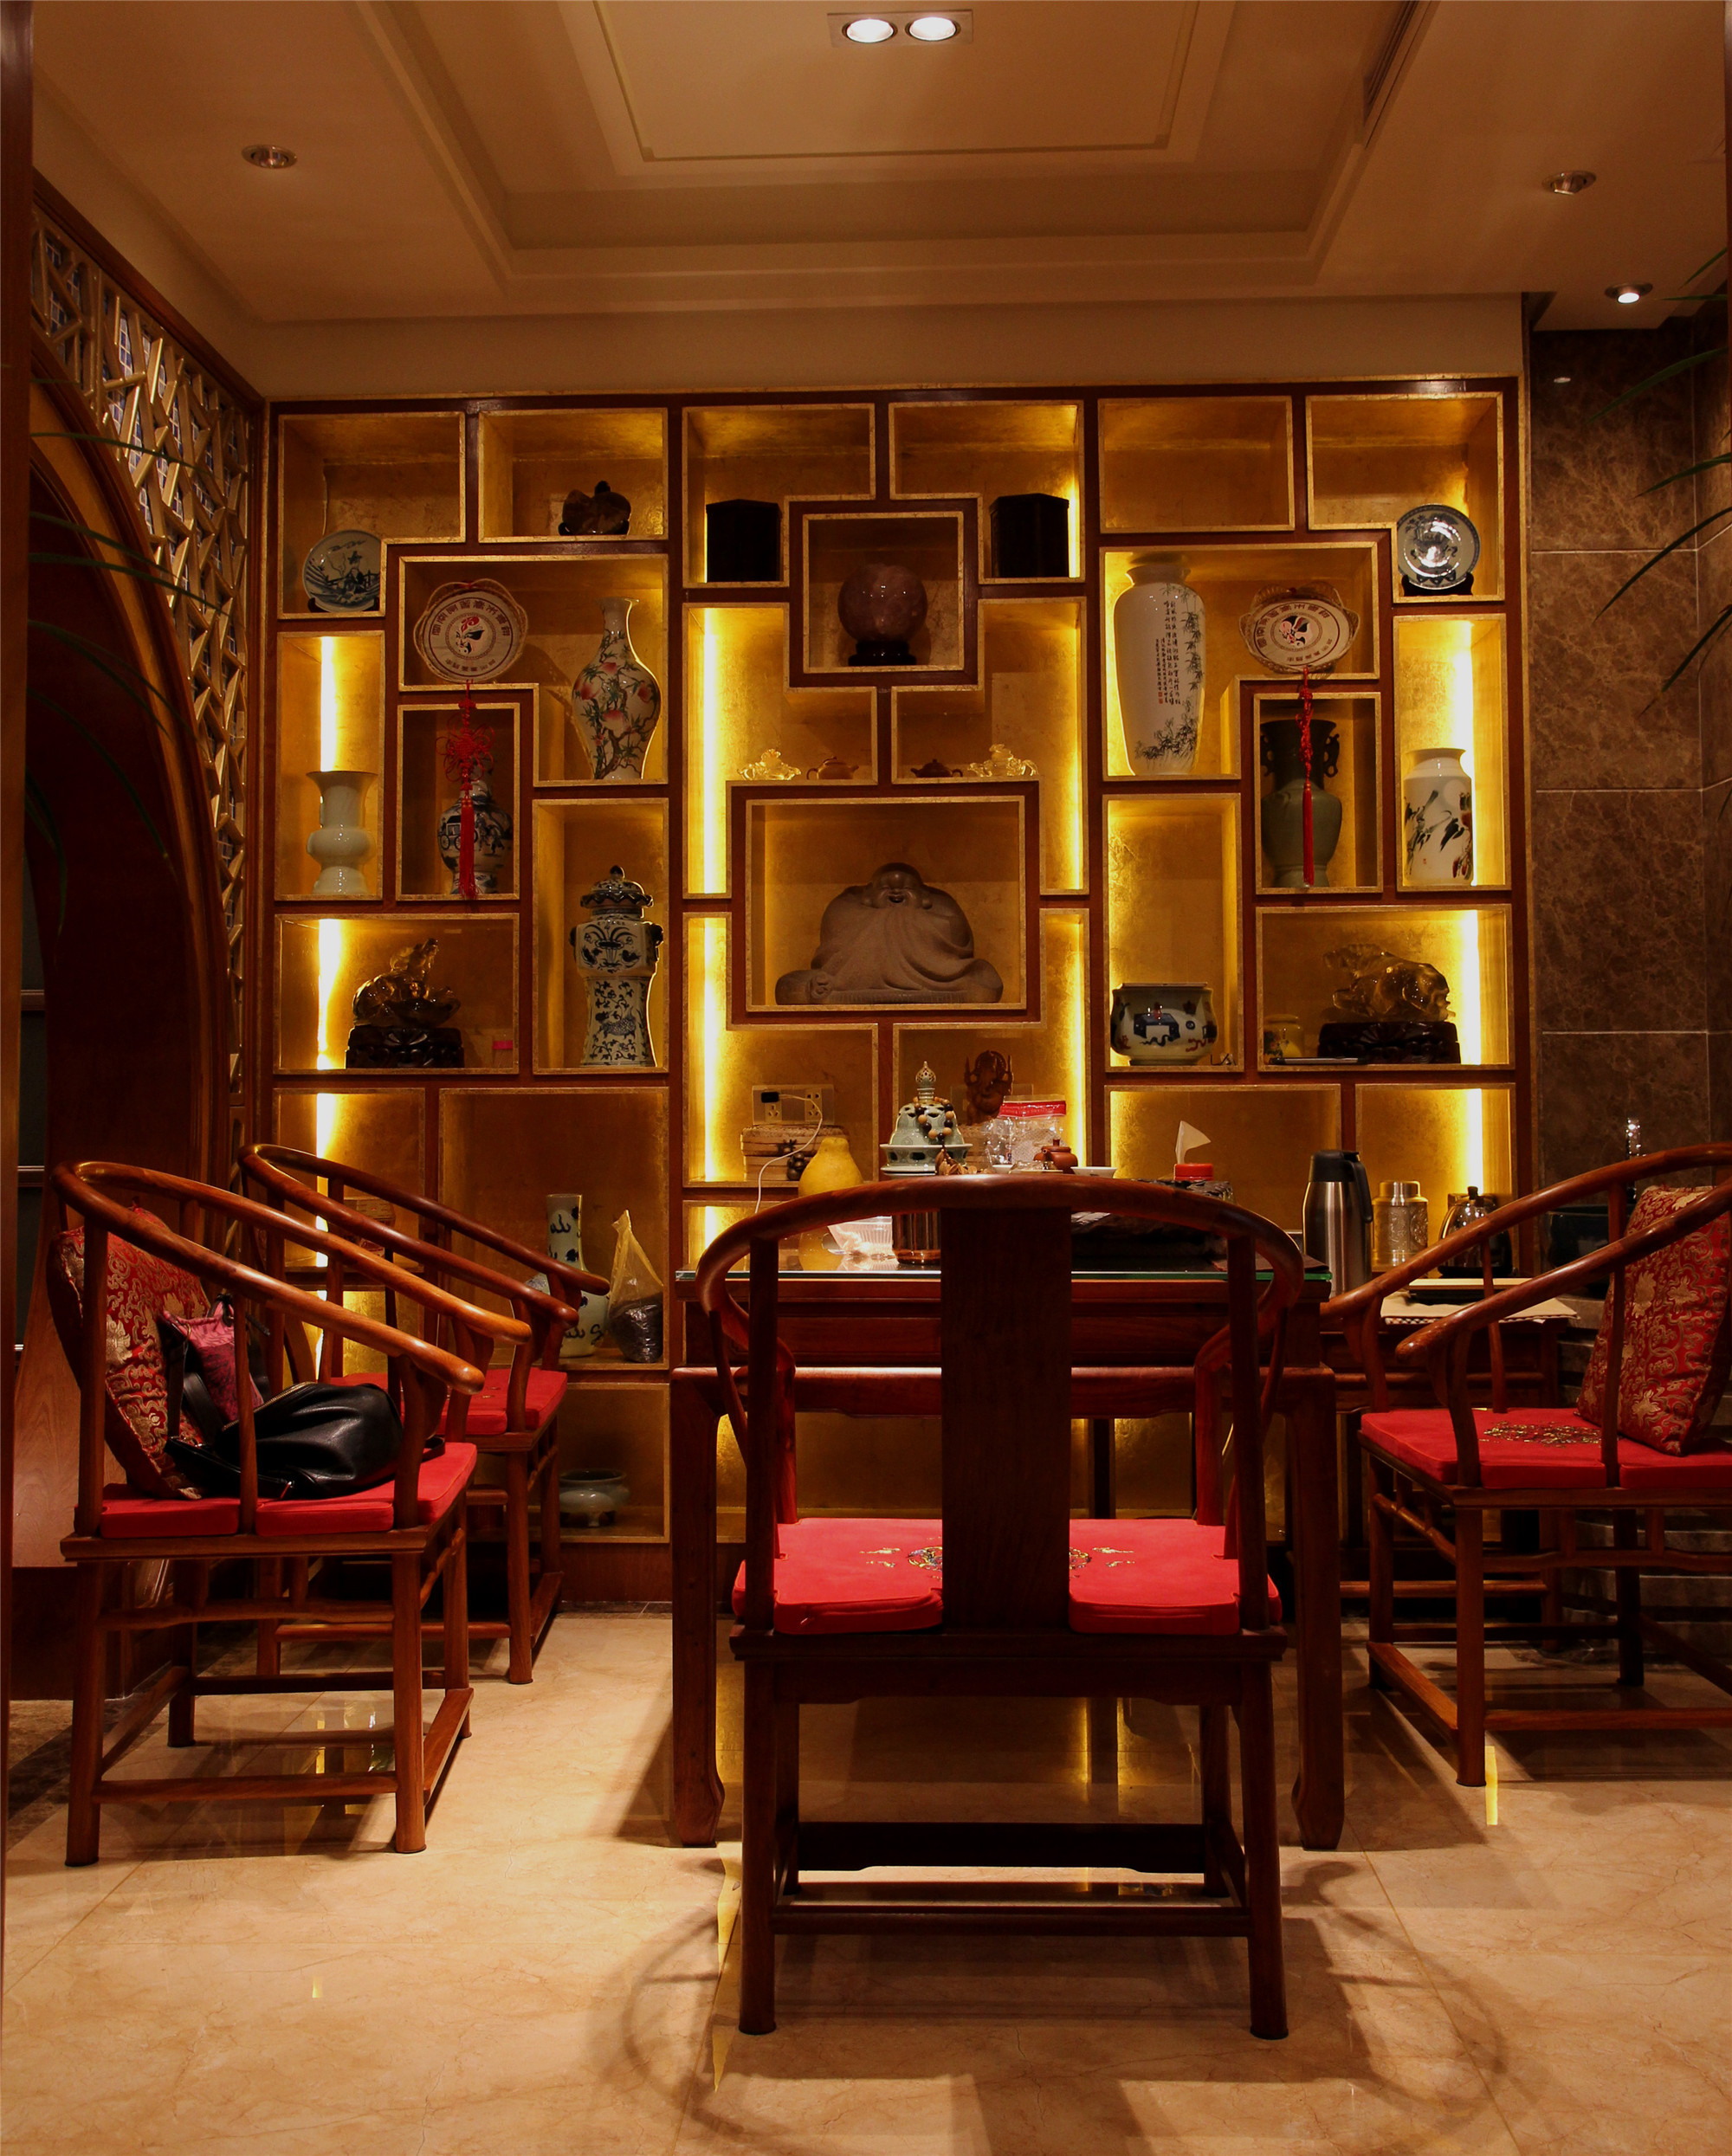 茶馆古典风格中式效果图 古典中式公寓装修茶室设计图